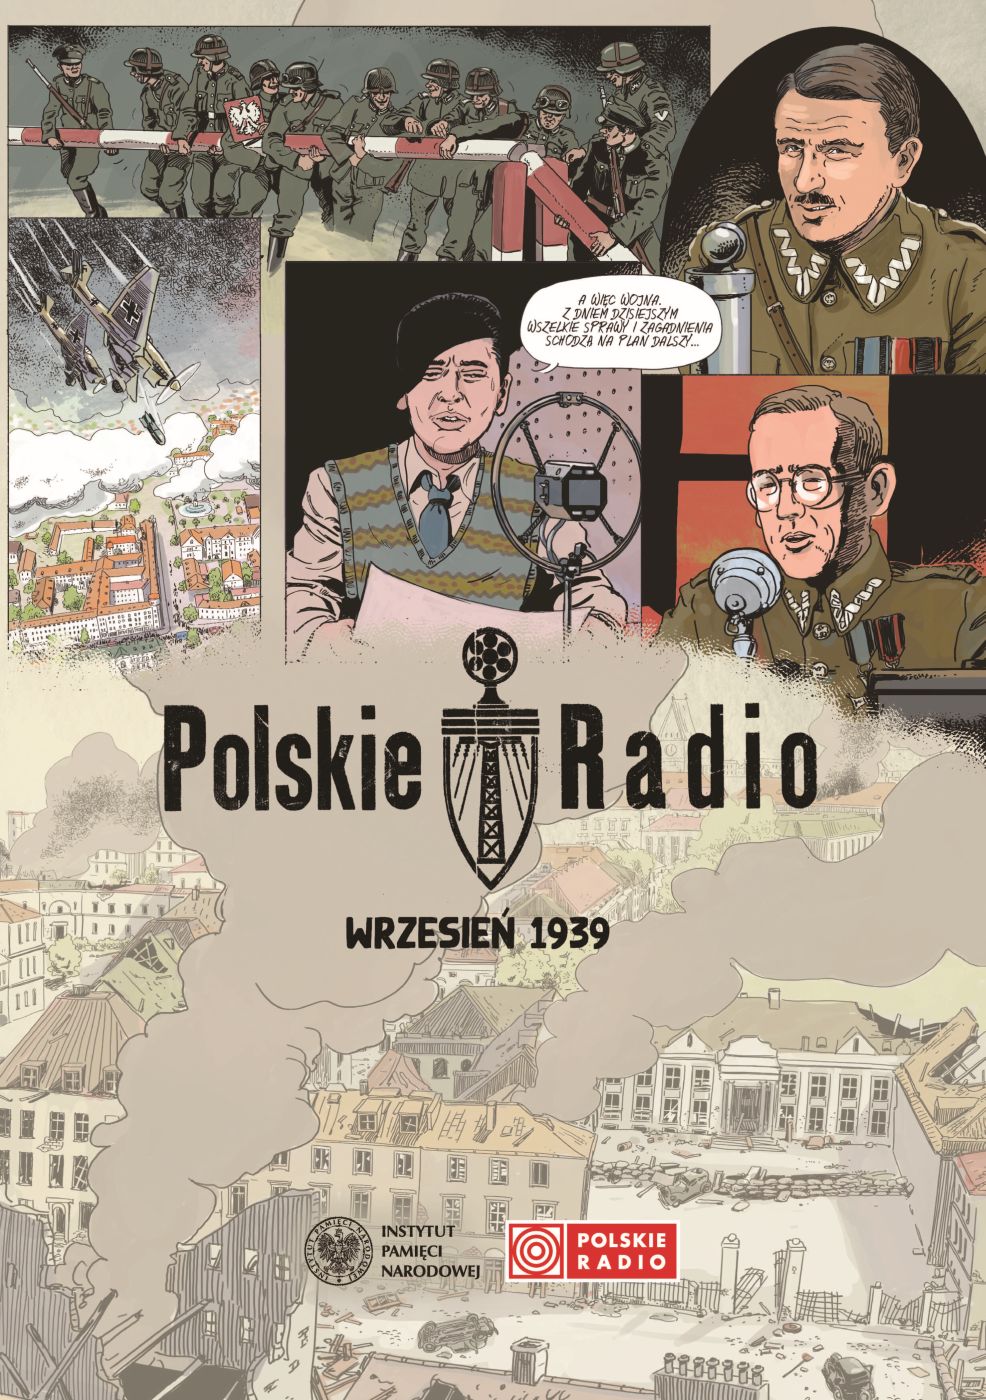 Offense Specificity He Polskie Radio. Wrzesień '39 - Komiksy - Instytut Pamięci Narodowej